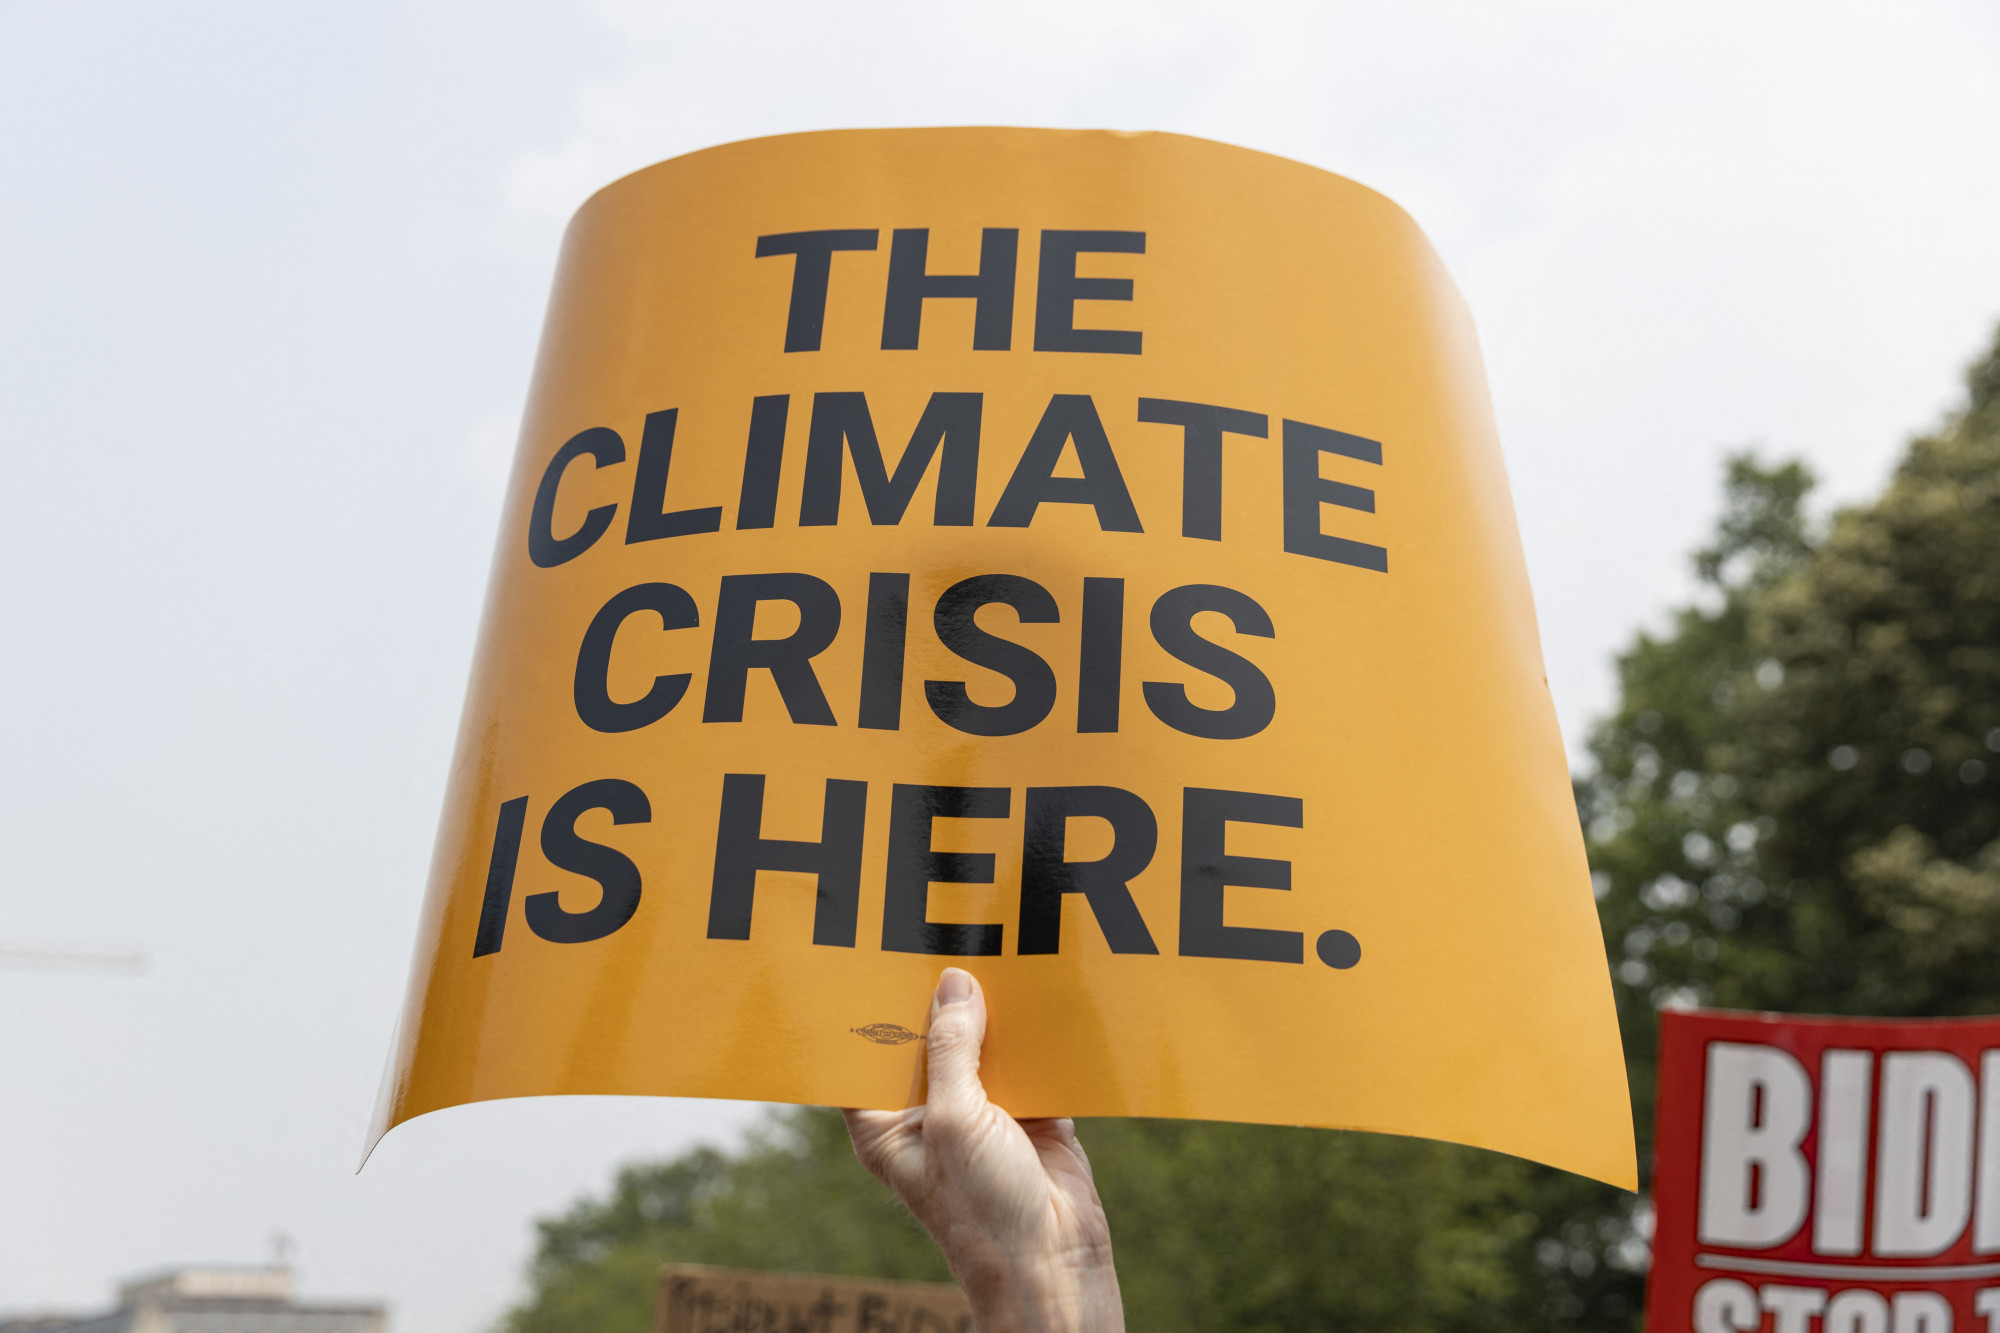 Klímakrízis, klímakatasztrófa, klímaszorongás: beszélnünk kell az éghajlatváltozásról, de nem mindegy, hogyan